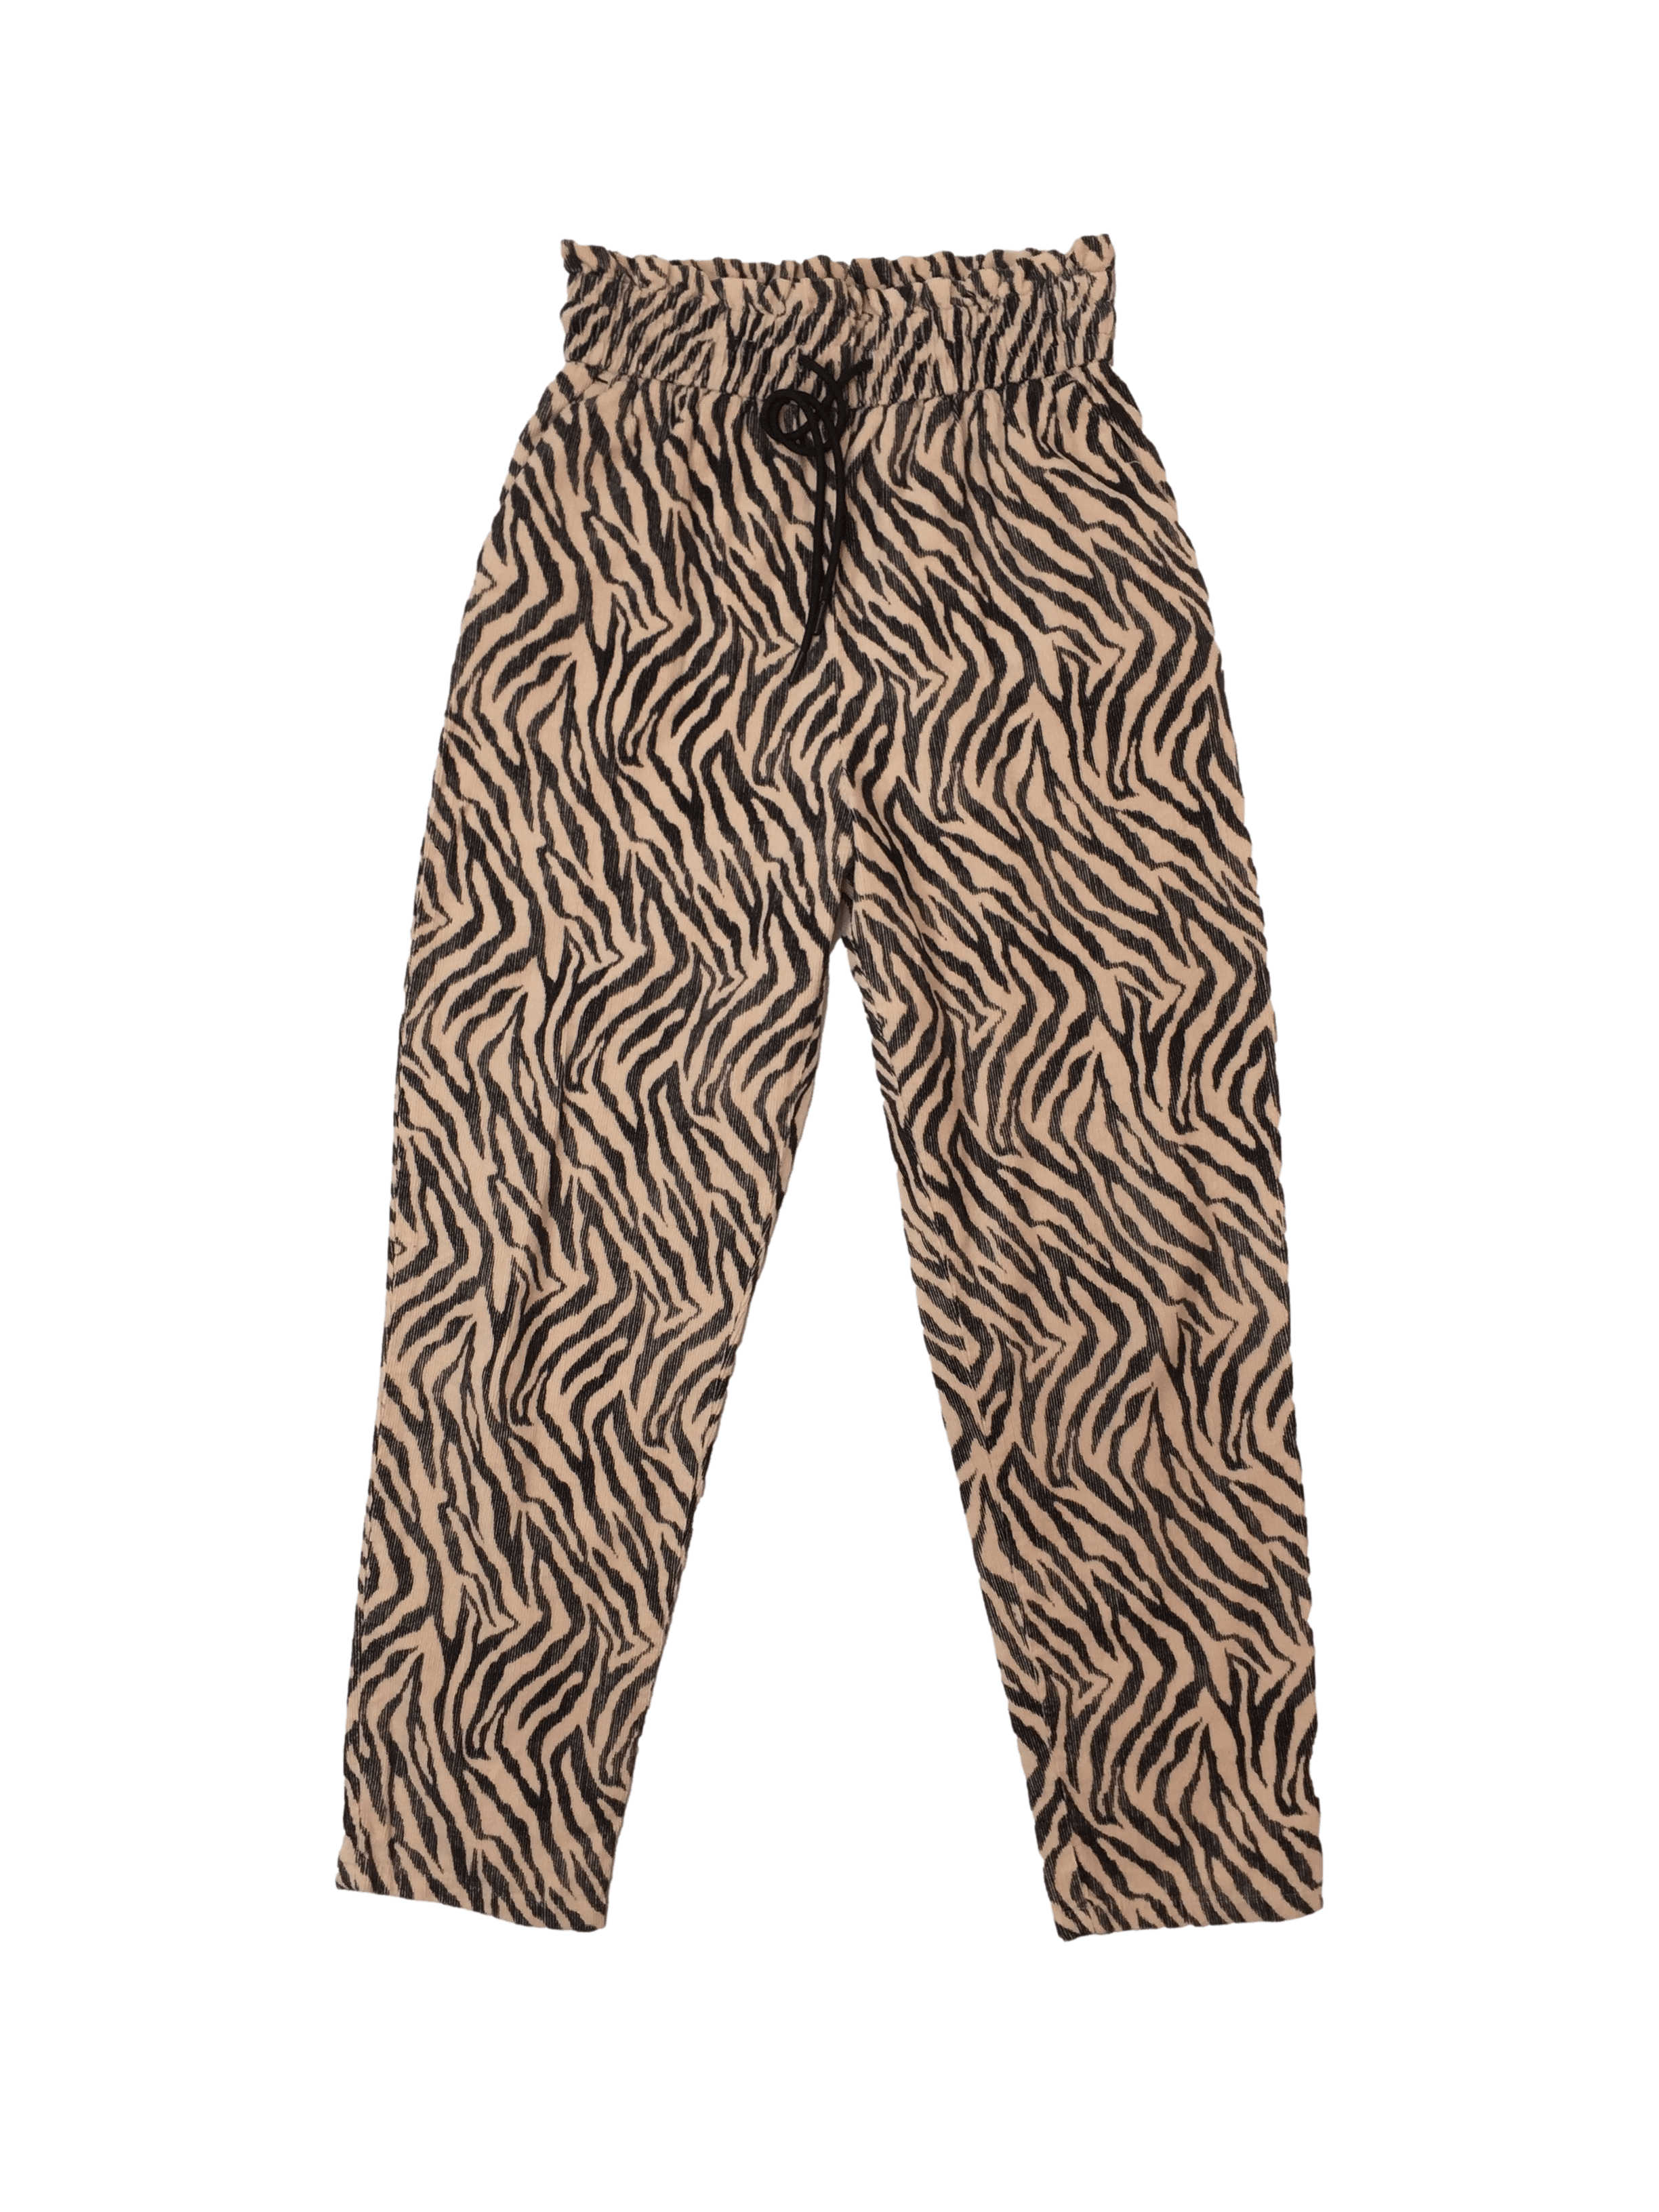 Pantalón Zara animal print, elástico en la cintura con bolsillos, cintura 66cm sin estirar, 66cm. largo 100cm.